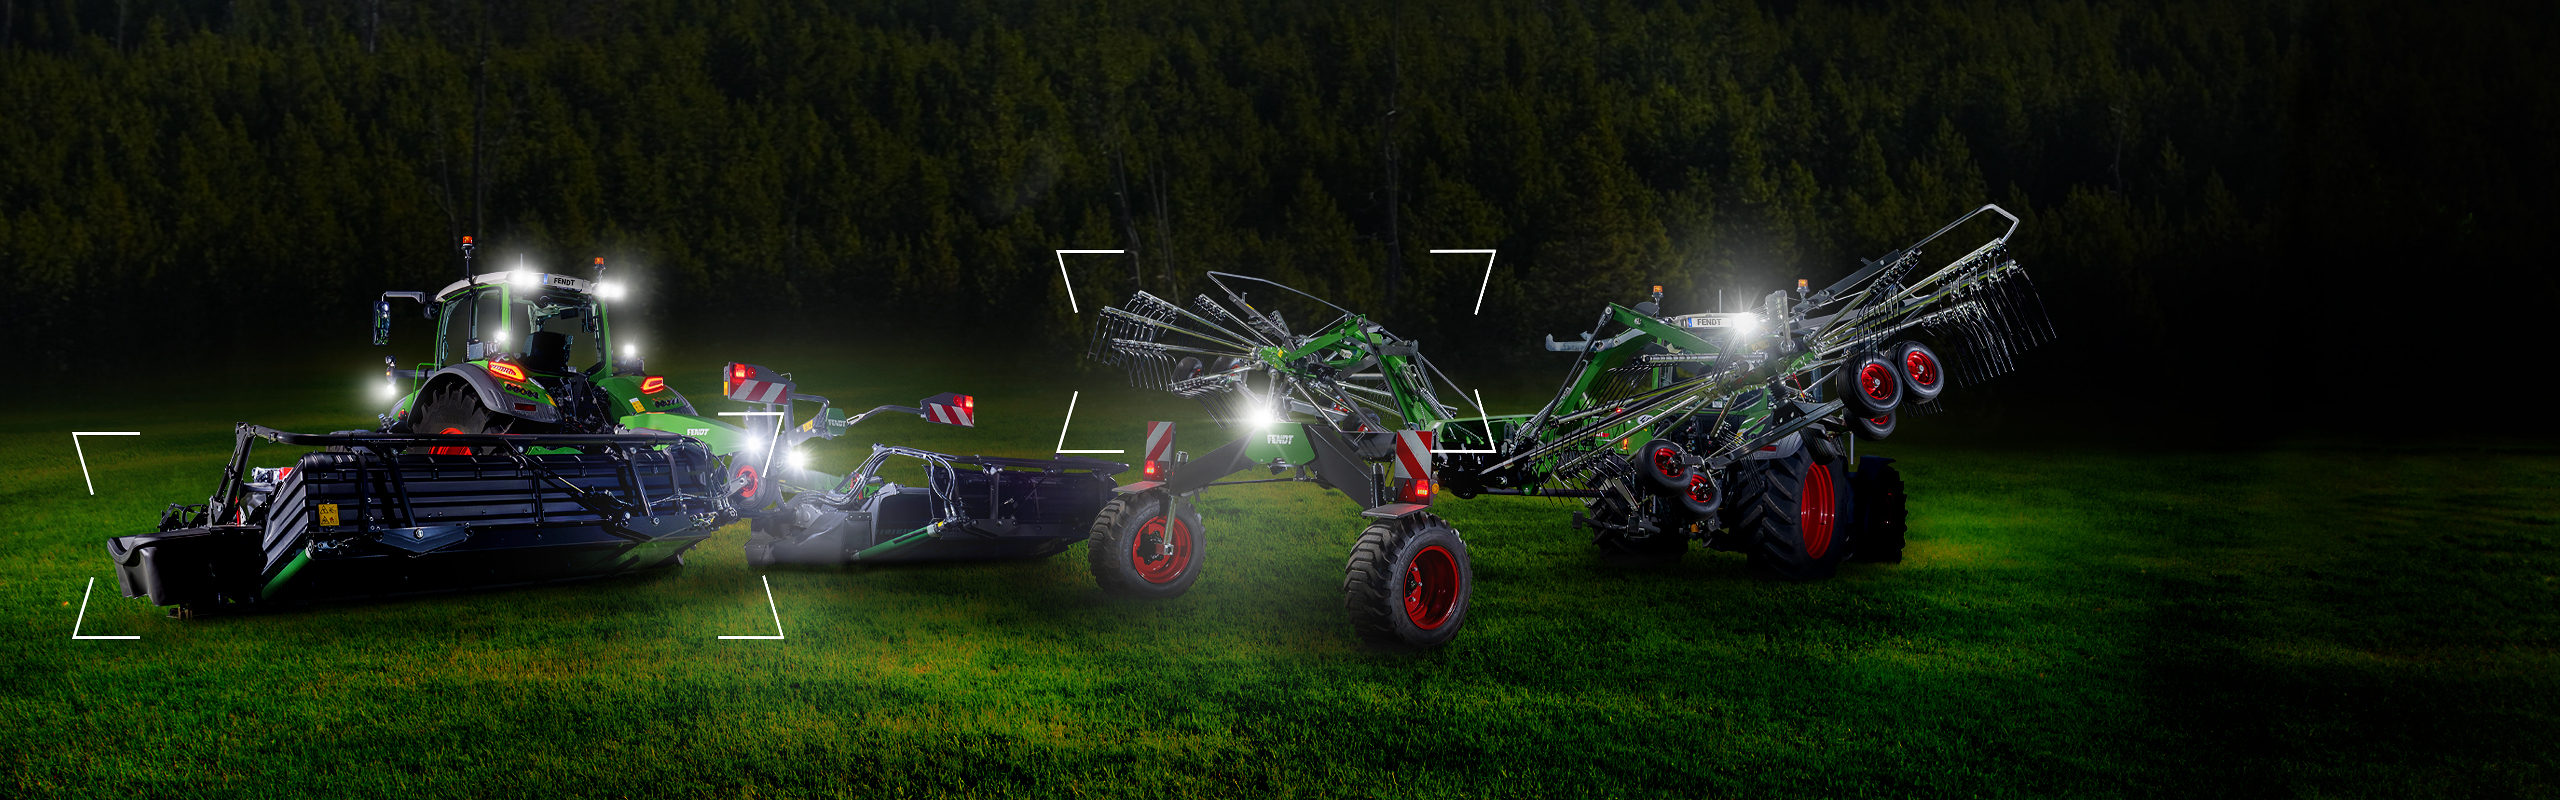 Kaksi traktoria, joissa on Fendt Slicer -leikkuri ja Fendt Former -harava, seisoo niityllä hämärässä ja on valaistu.